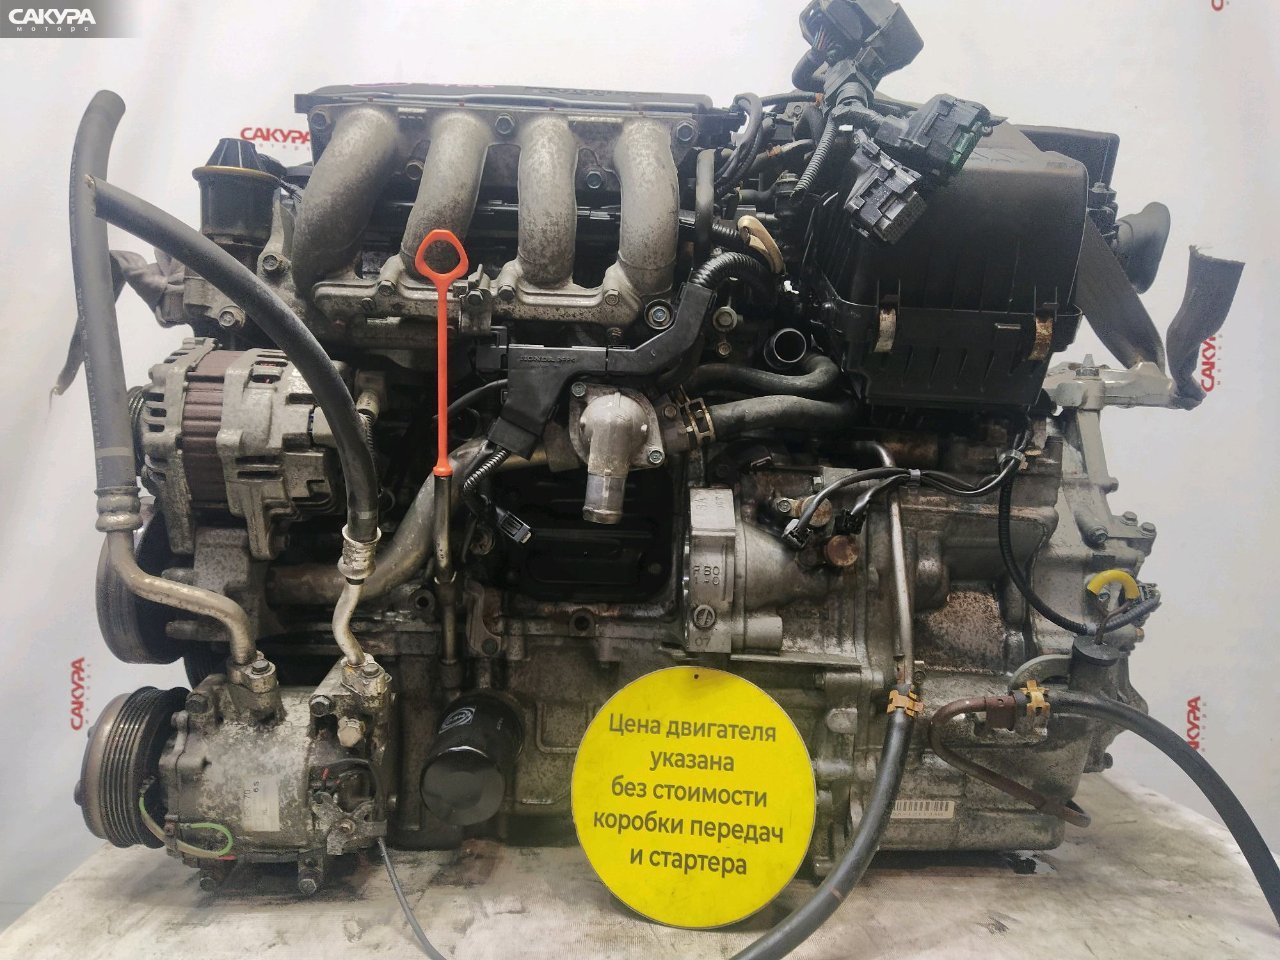 Двигатель Honda FIT GE6 L13A: купить в Сакура Красноярск.